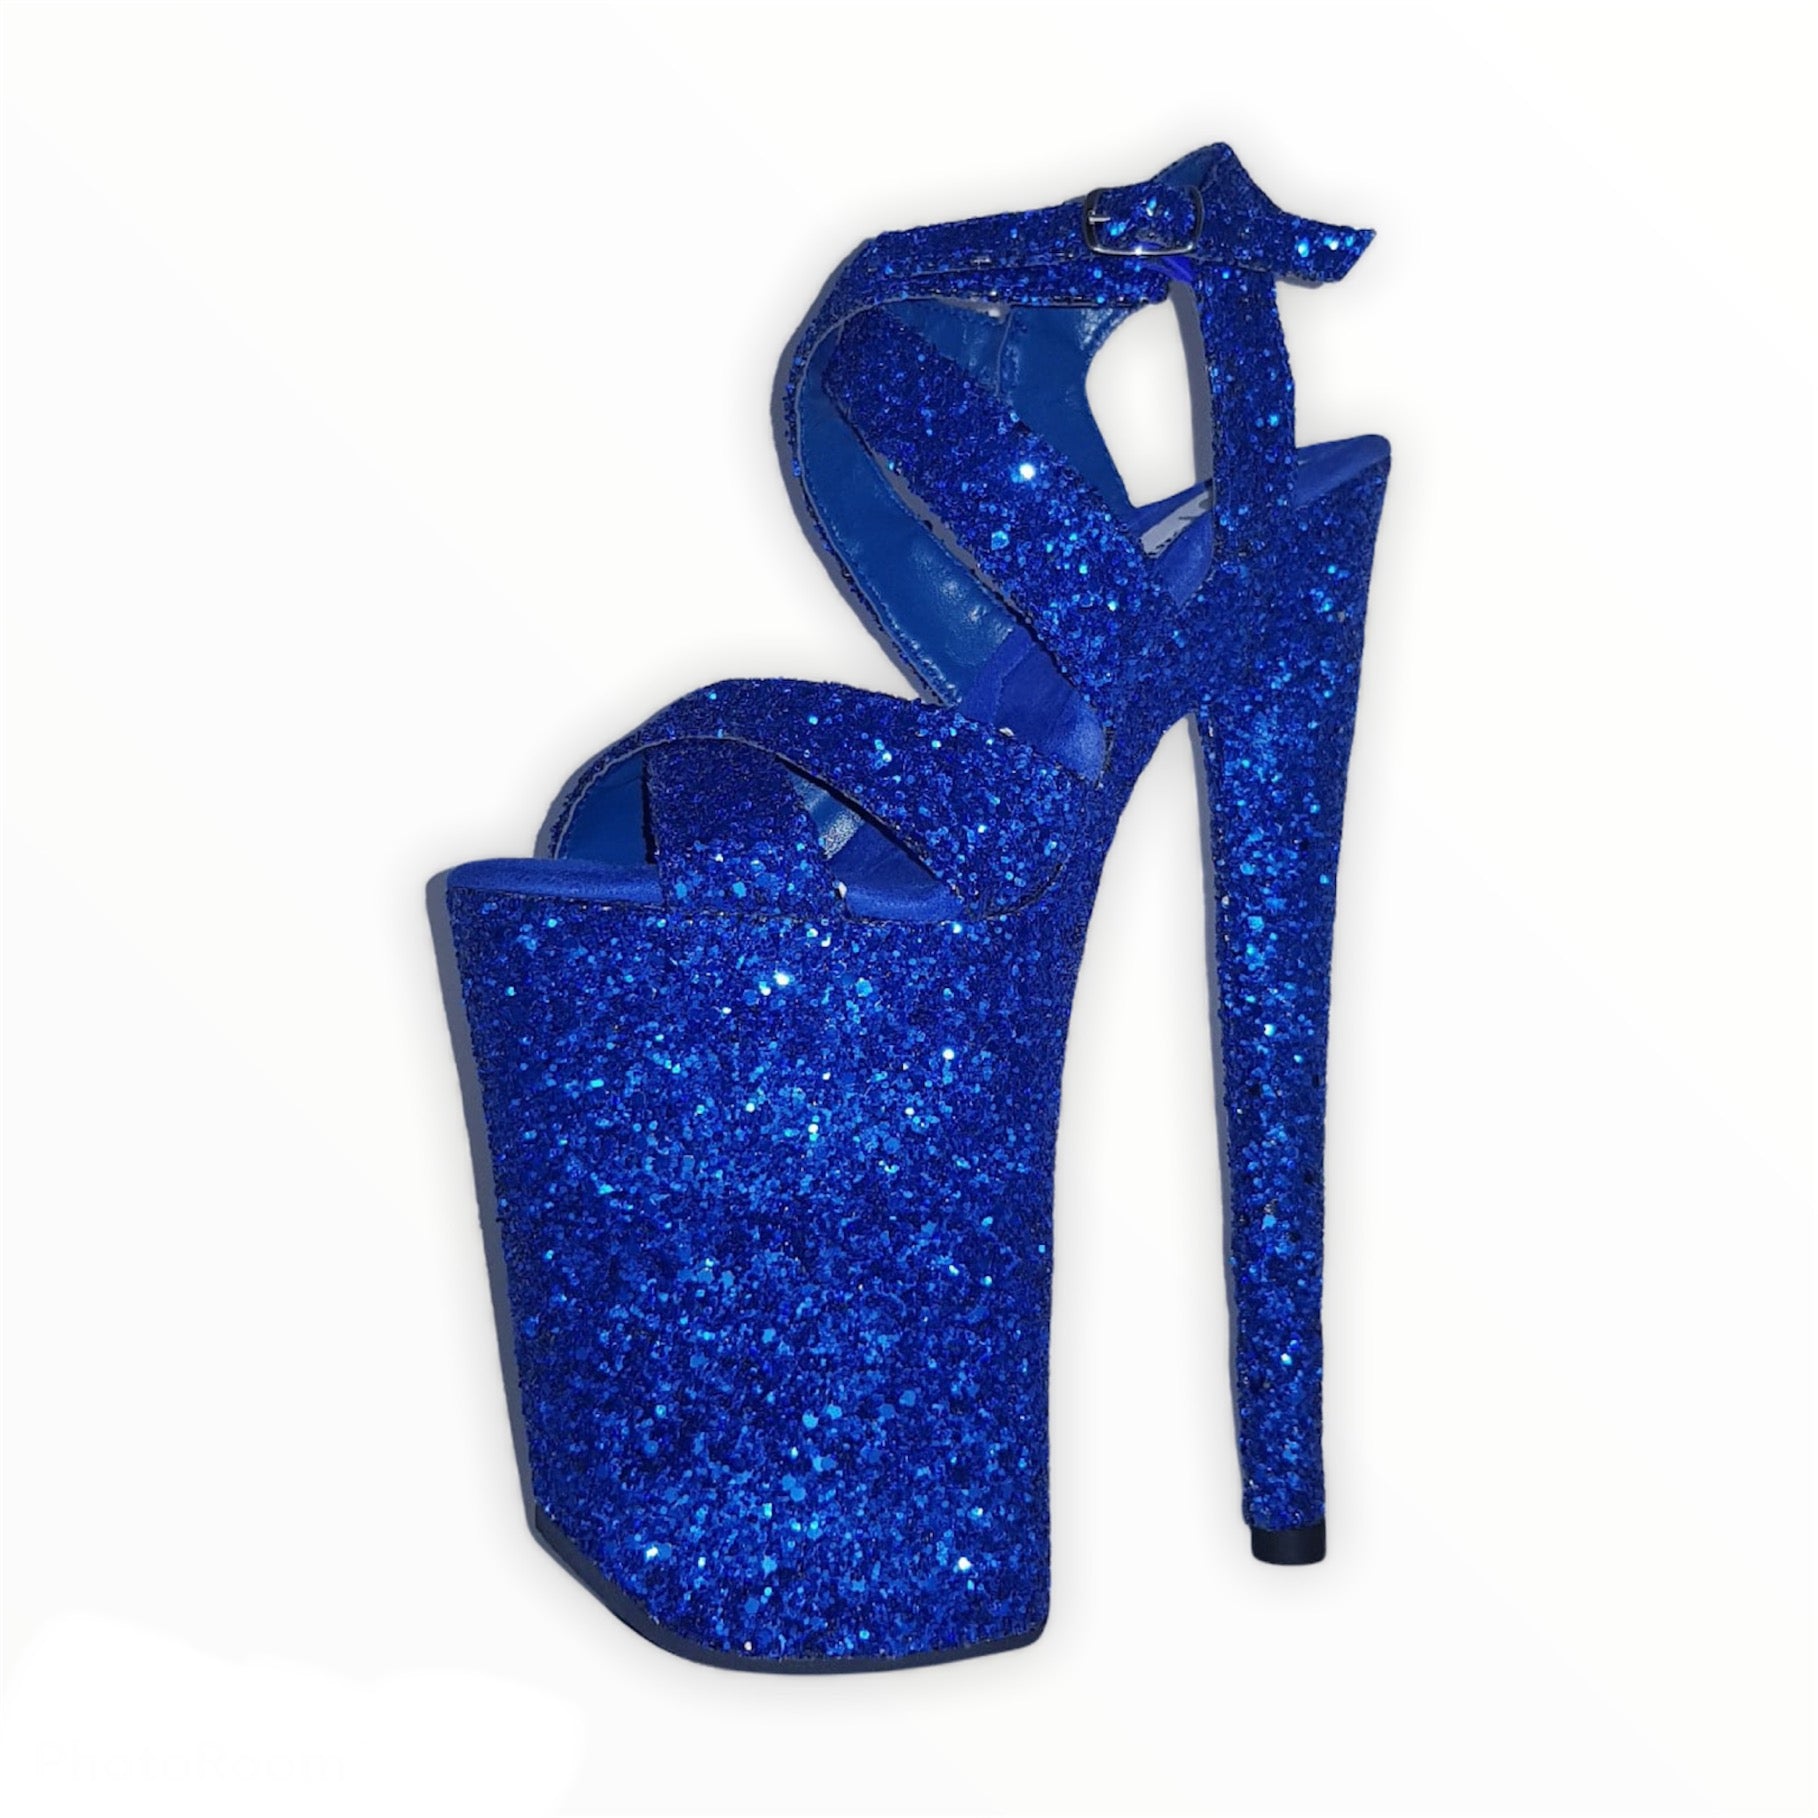 Buy Blue Jessica Sparkle Heels by Designer House of Vian Online at Ogaan.com